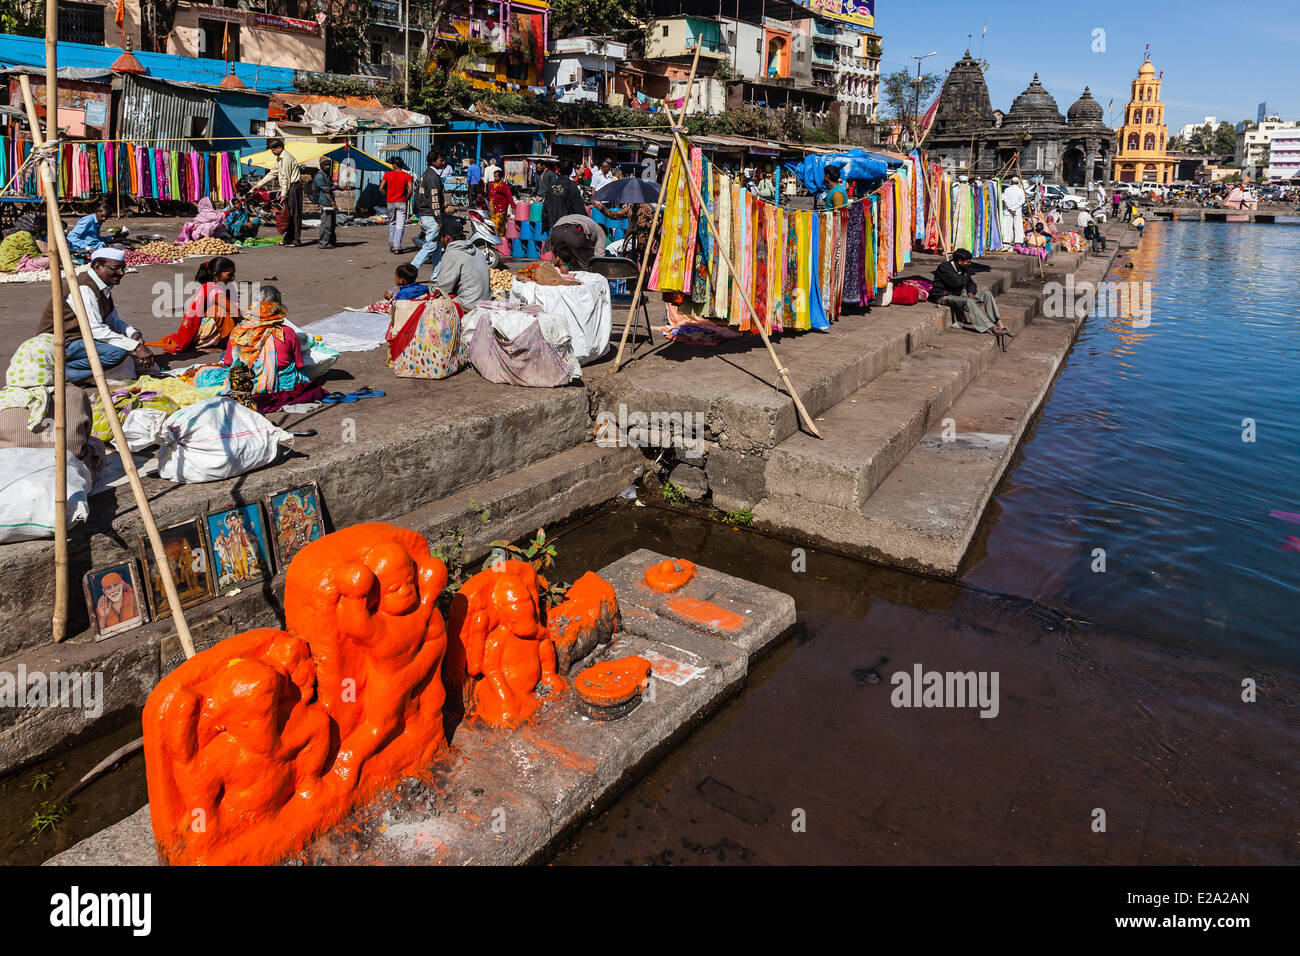 India, Maharashtra state, Nashik, market near the ghats Stock Photo